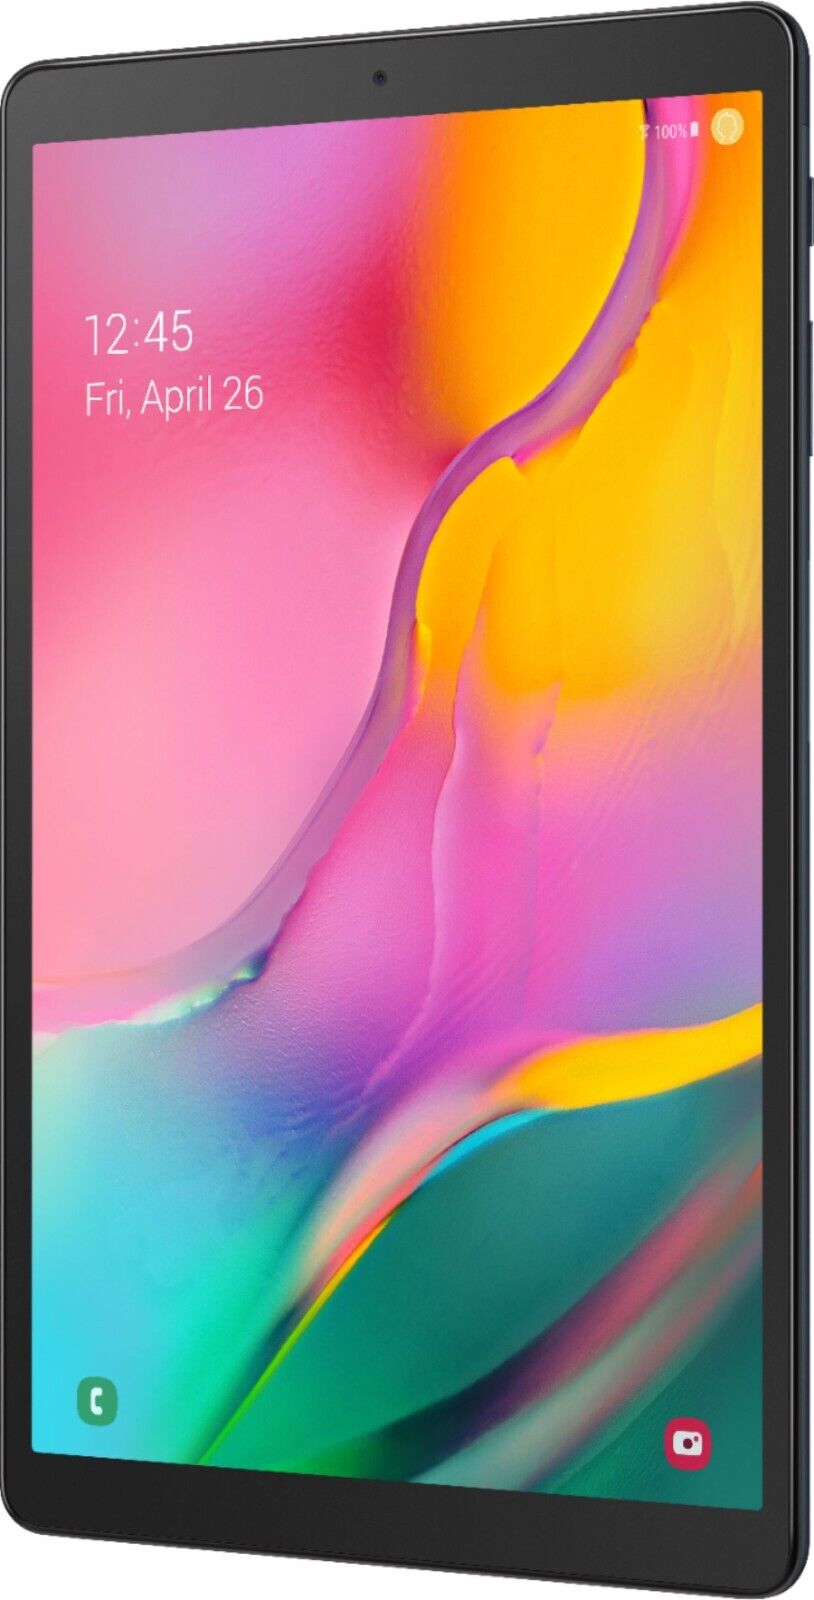 Samsung Galaxy Tab A 10.1 32GB Wi-Fi Black 2019 - Used Good